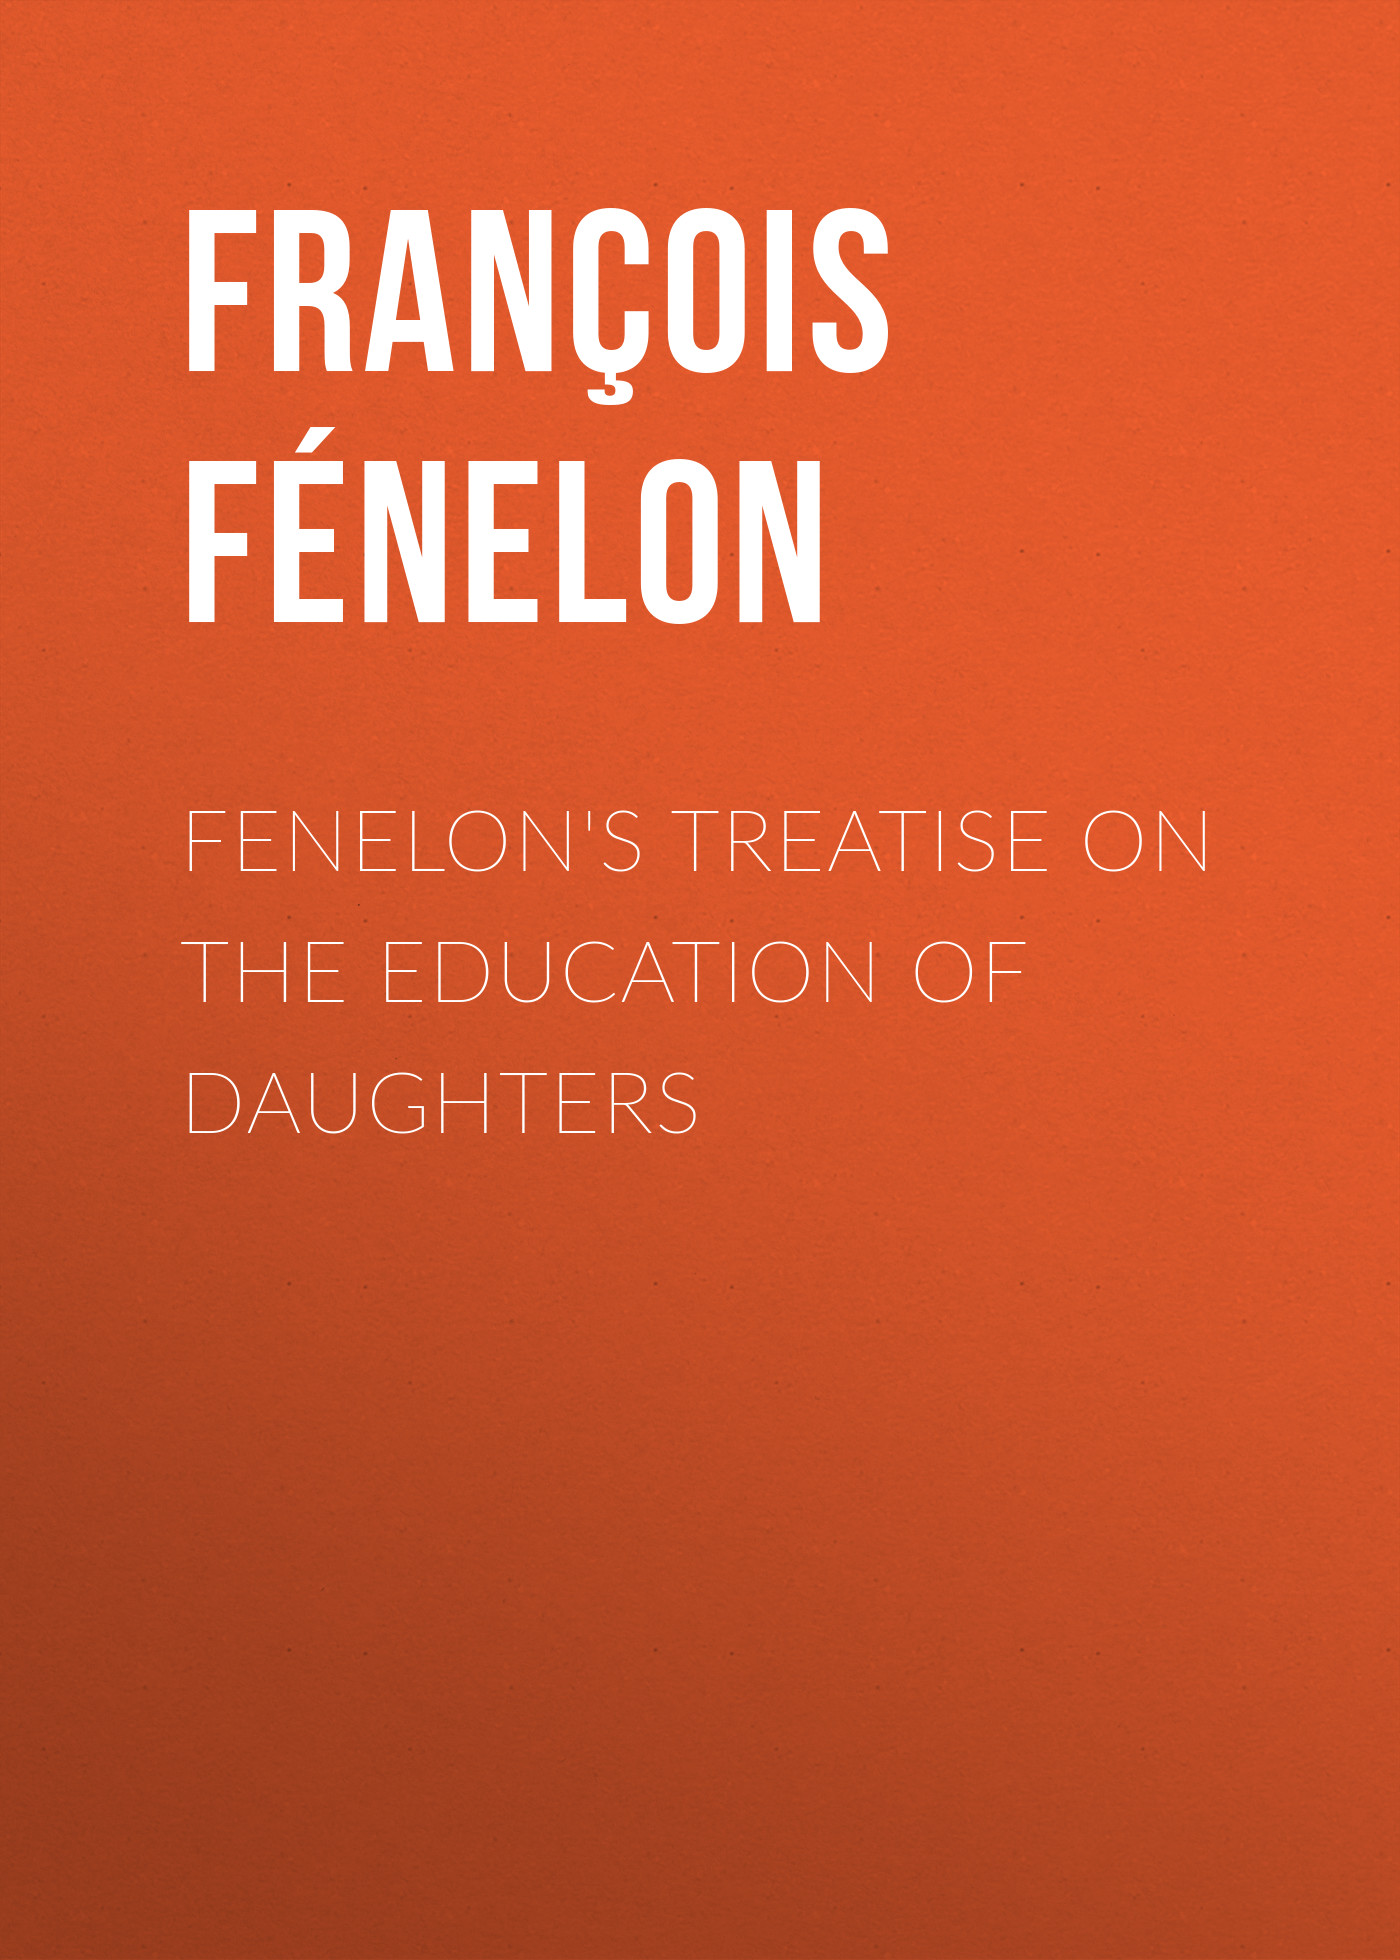 Книга Fenelon's Treatise on the Education of Daughters из серии , созданная François Fénelon, может относится к жанру Зарубежная старинная литература, Зарубежная классика. Стоимость электронной книги Fenelon's Treatise on the Education of Daughters с идентификатором 24727137 составляет 0 руб.